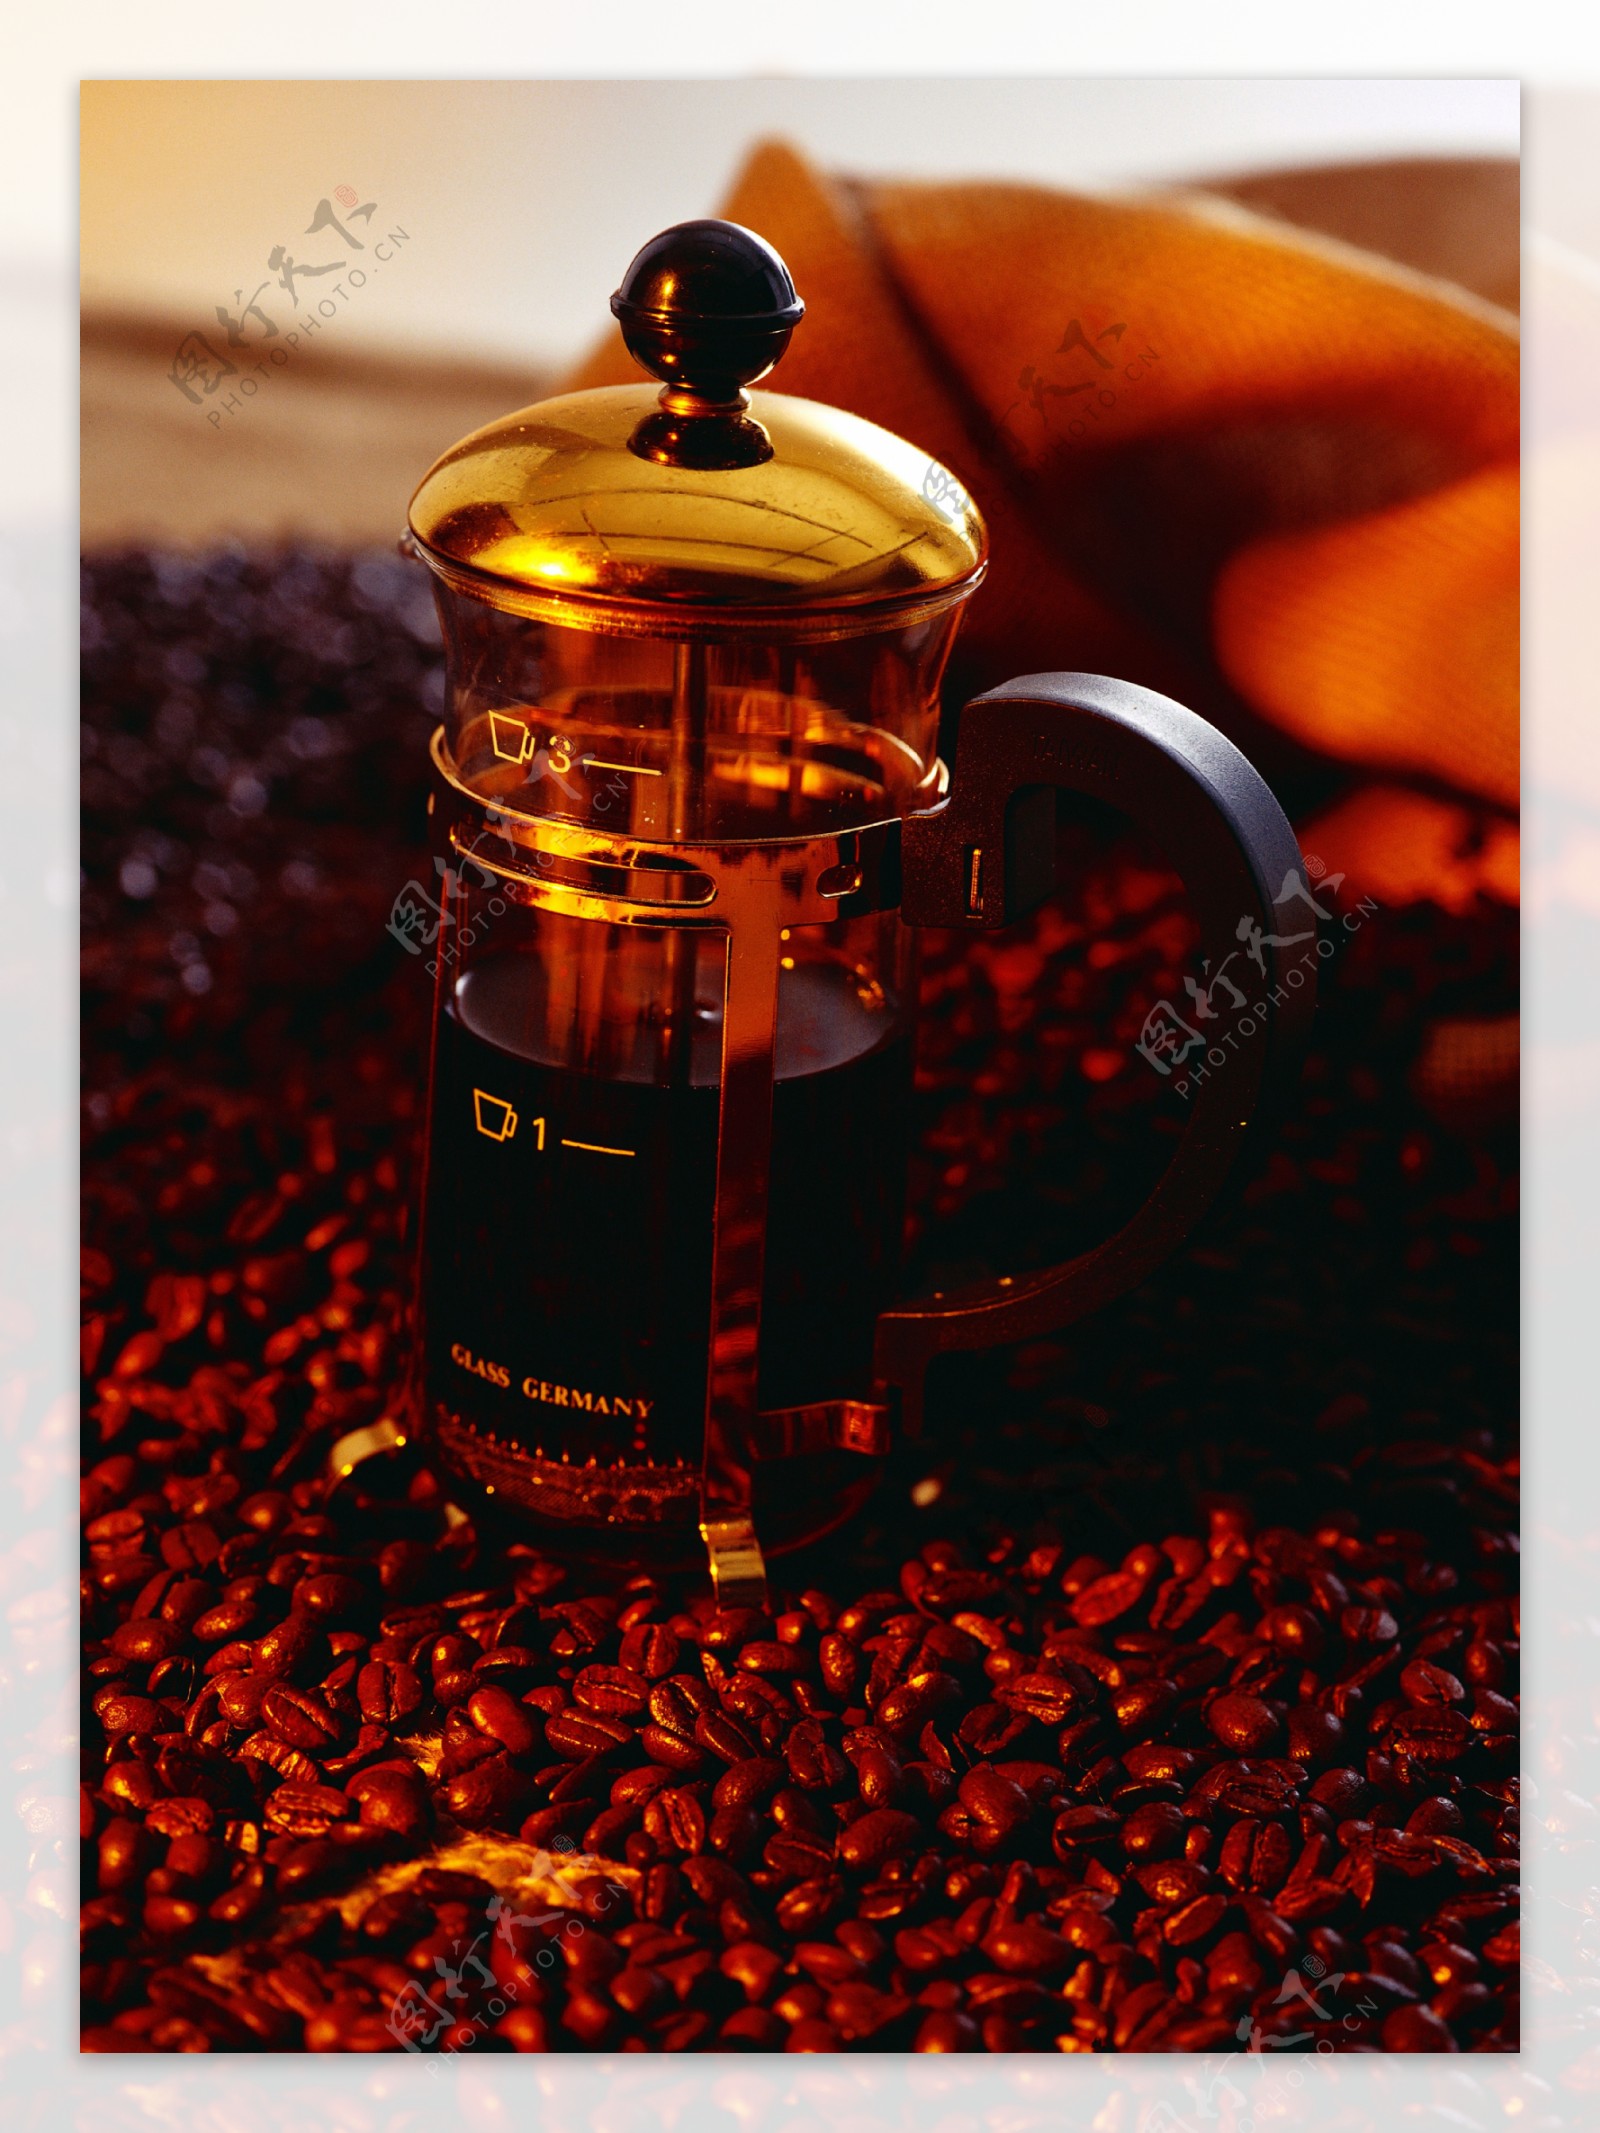 咖啡豆搅拌机图片